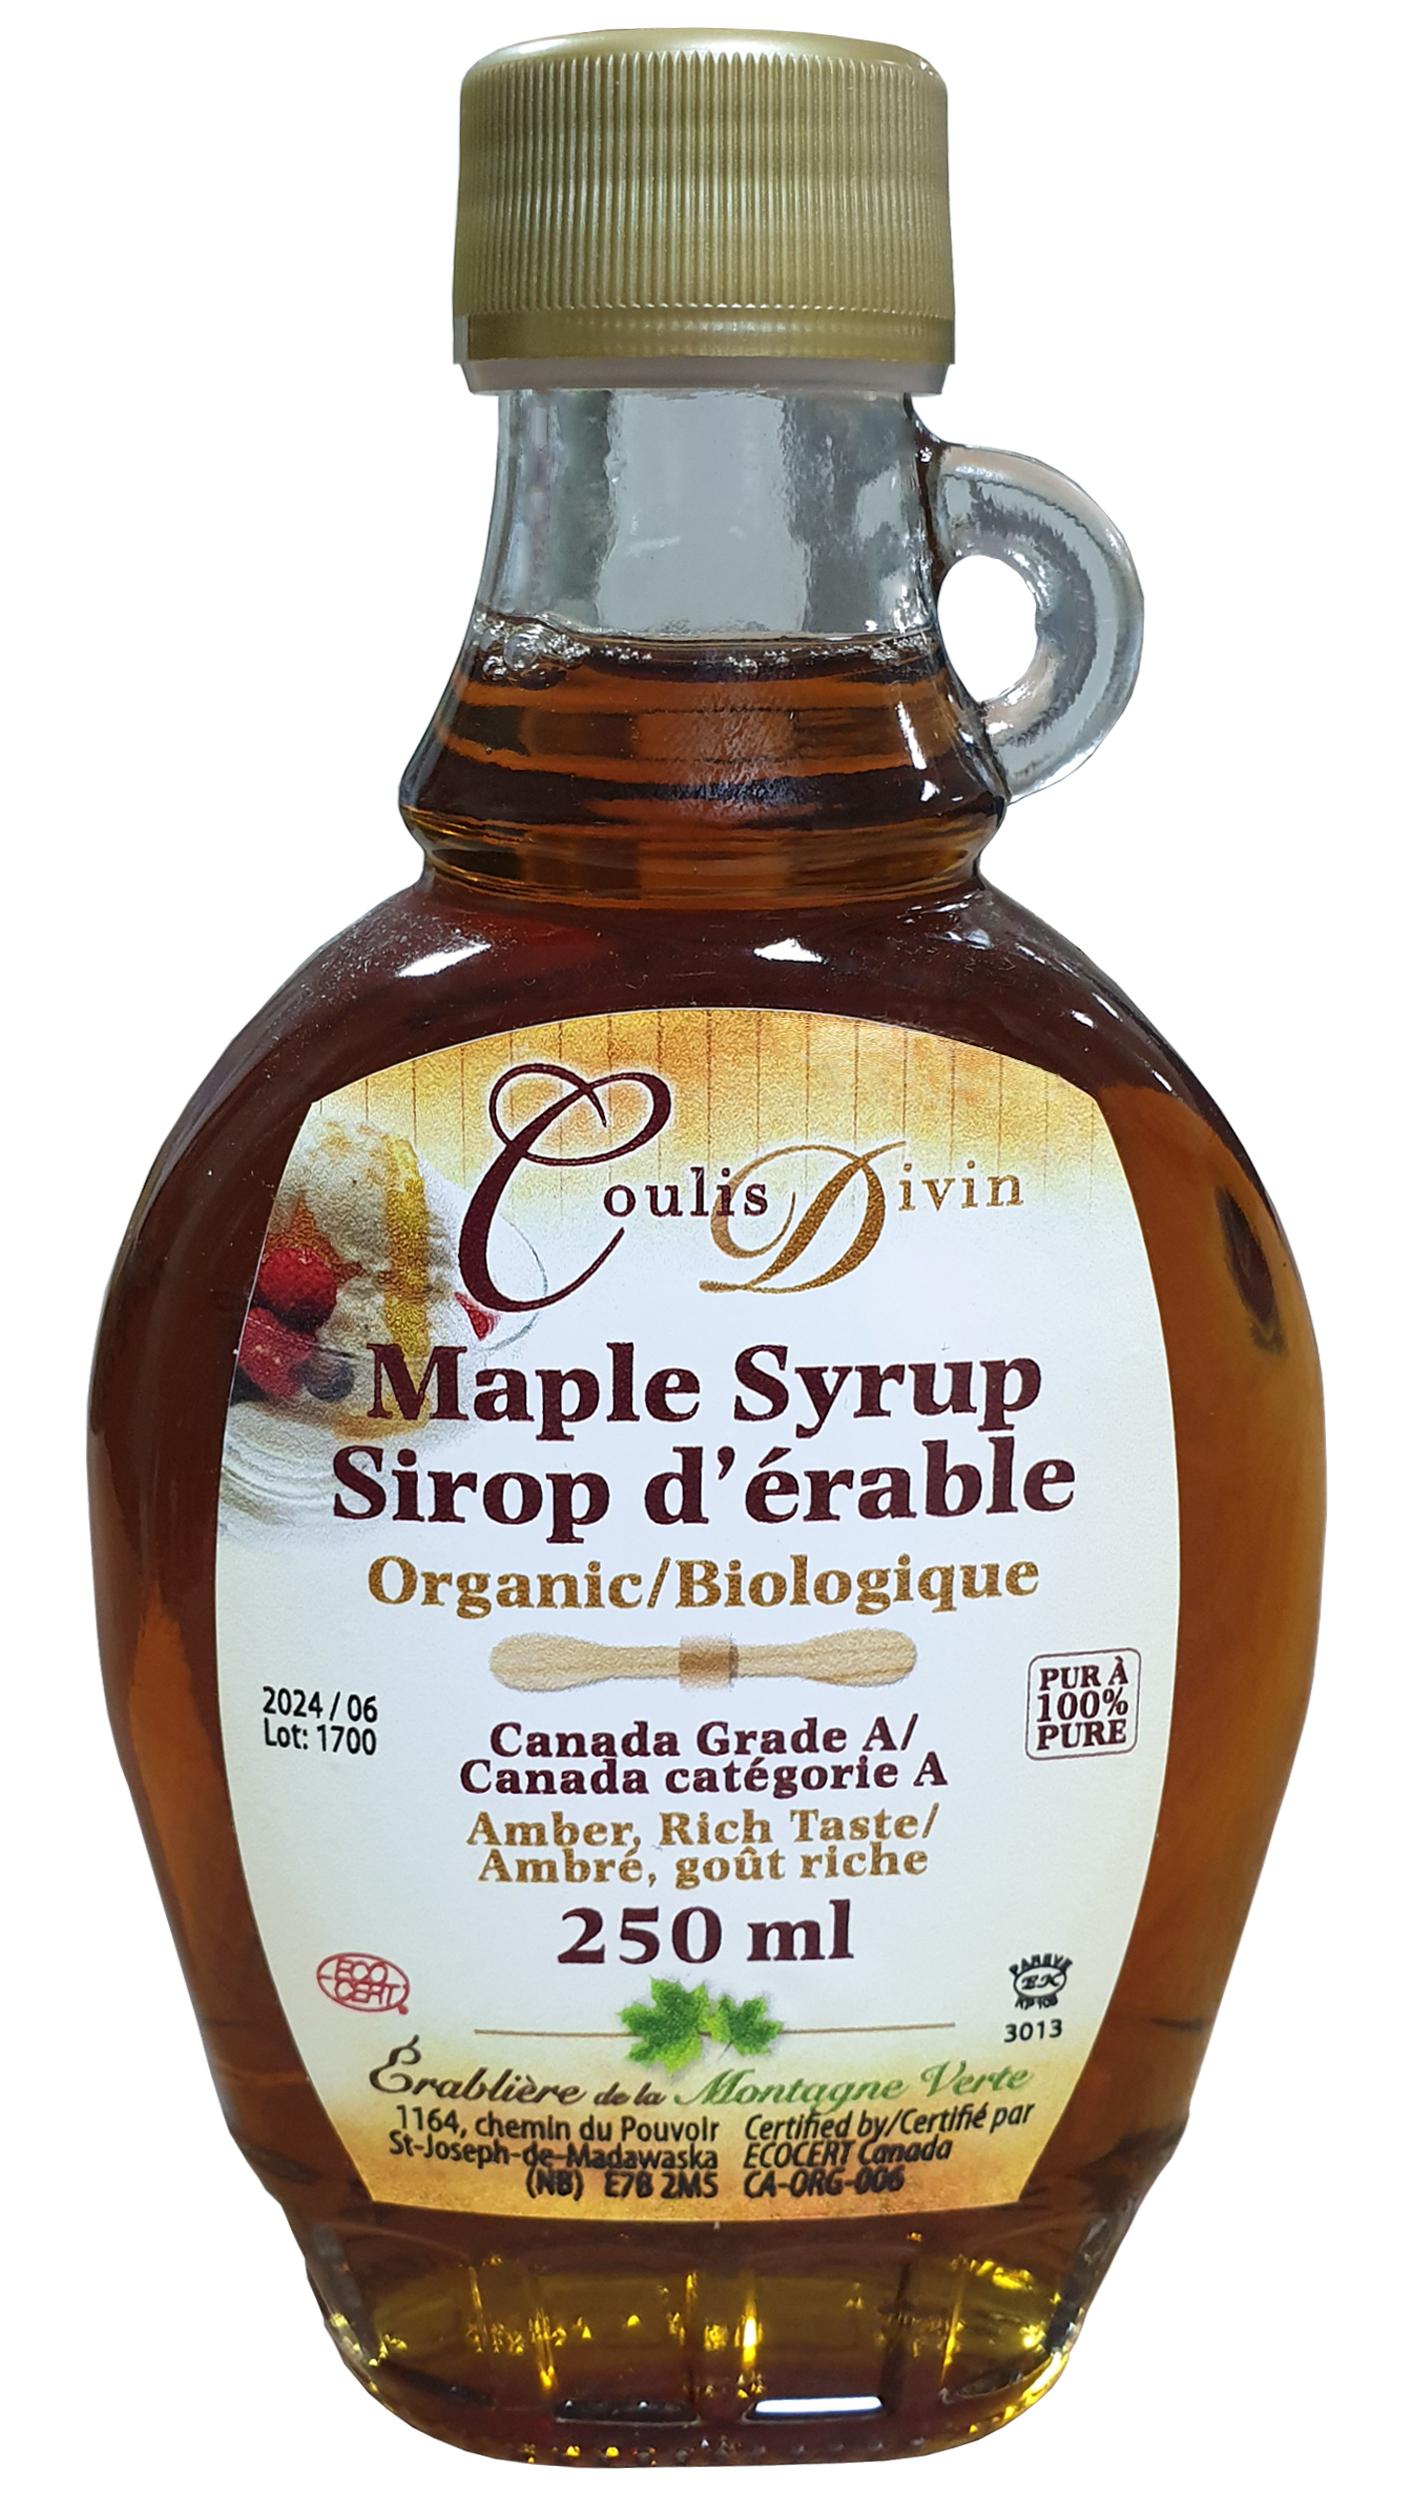 加拿大 A級有機楓葉糖漿 Maple Syrup irop d\'erable Canada